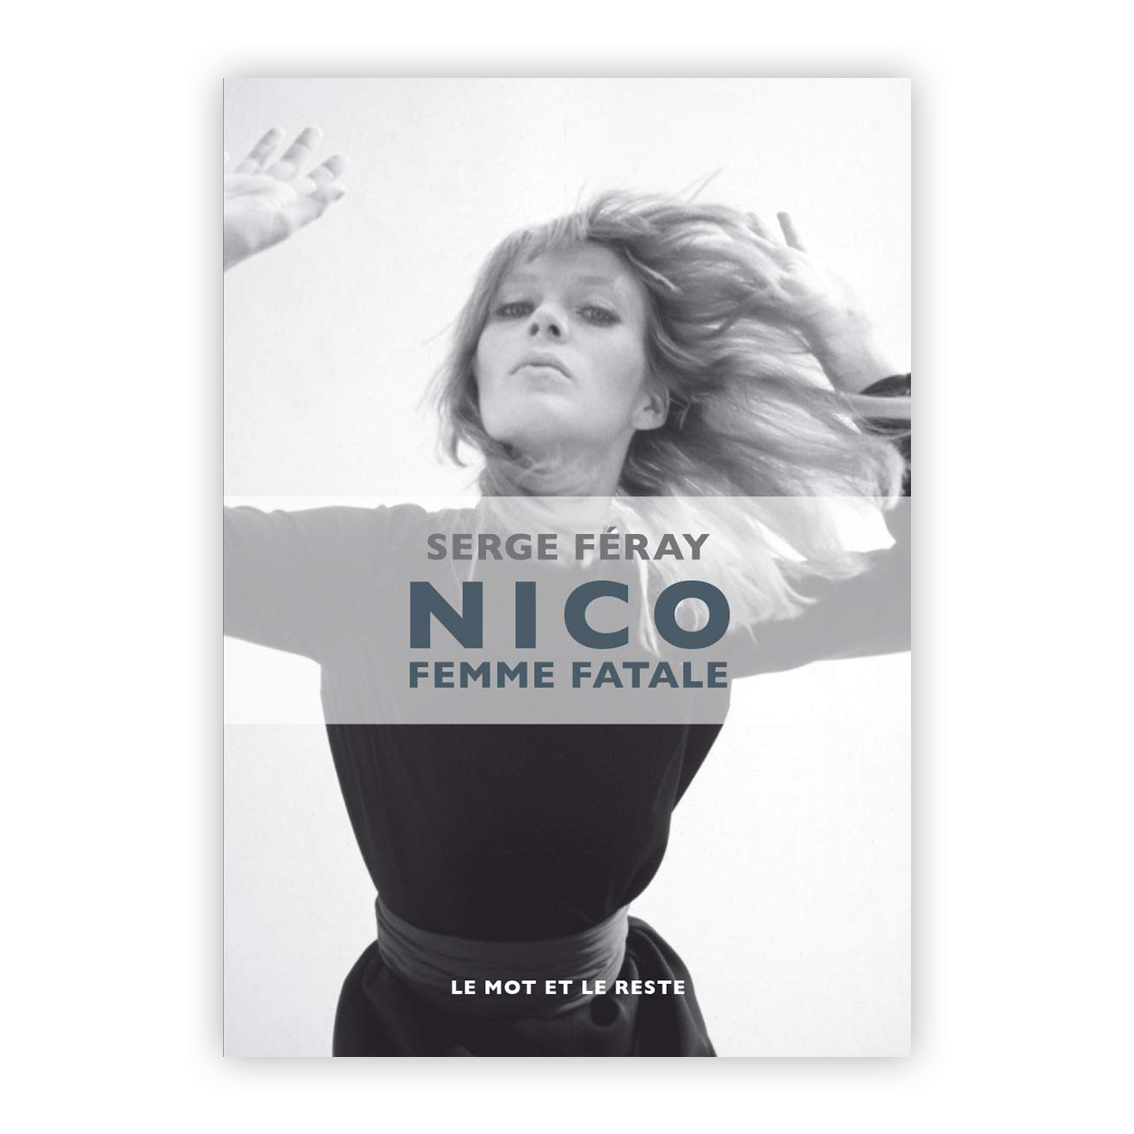 Nico, femme fatale Broché – Illustré, 18 février 2016 de Serge Feray (Auteur)